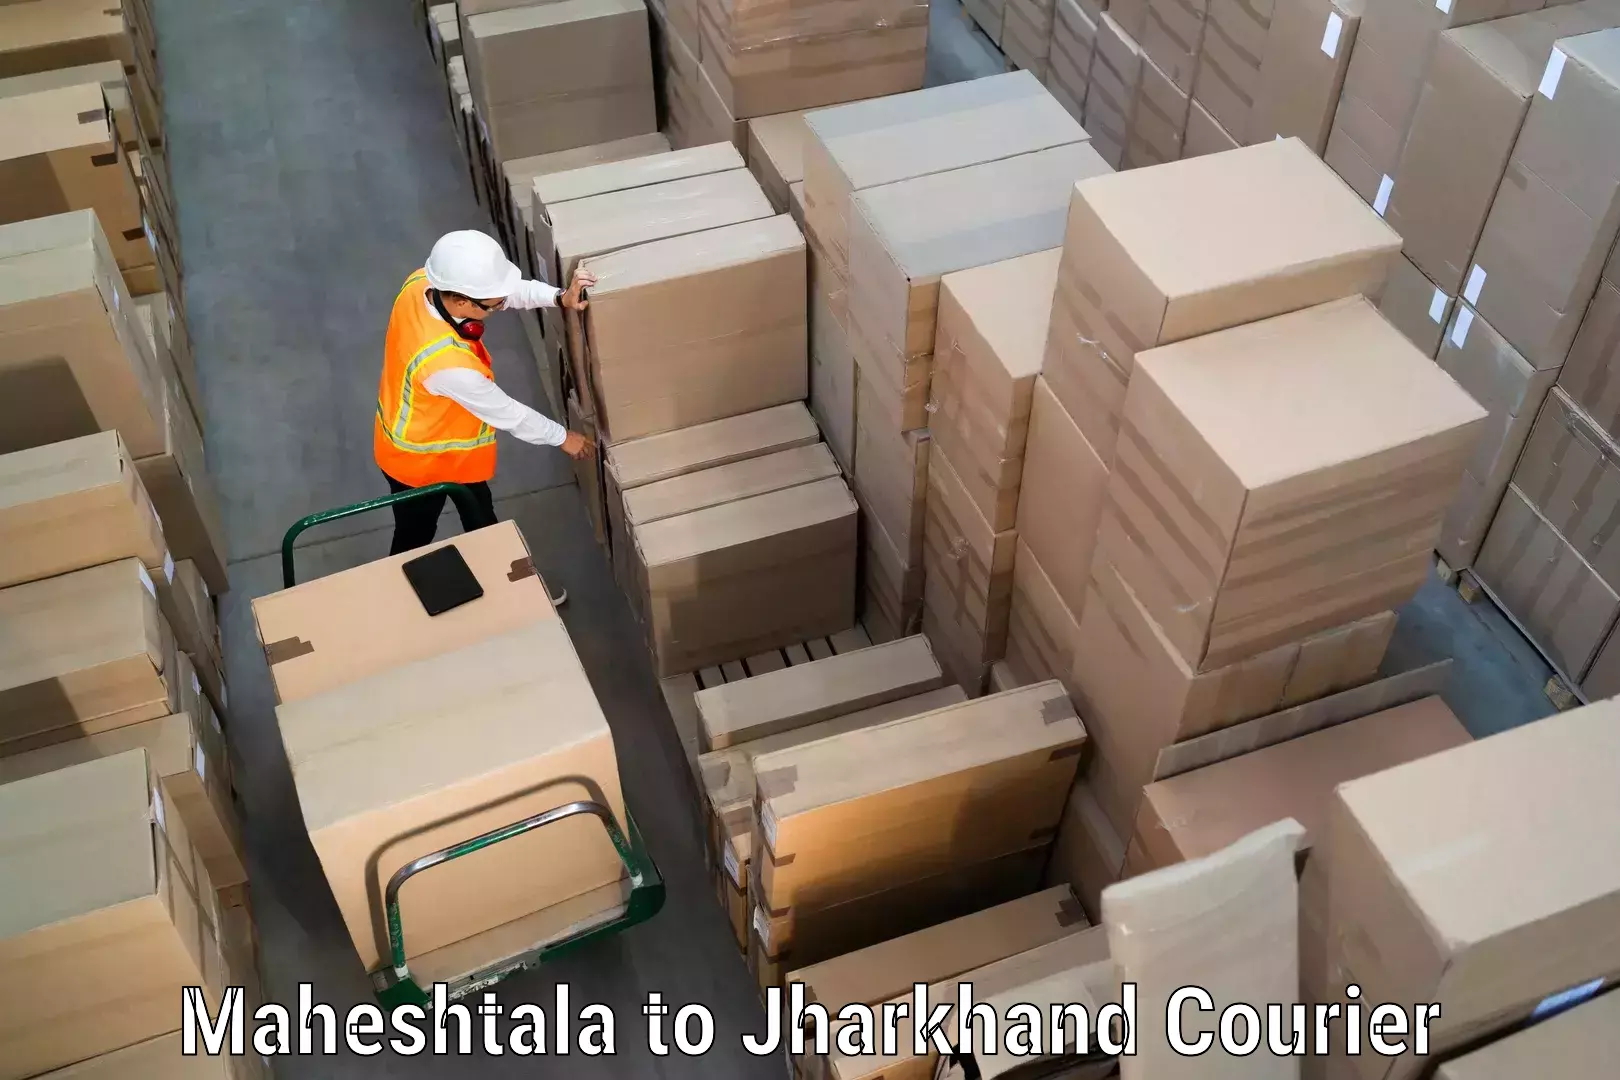 Easy access courier services Maheshtala to Kedla